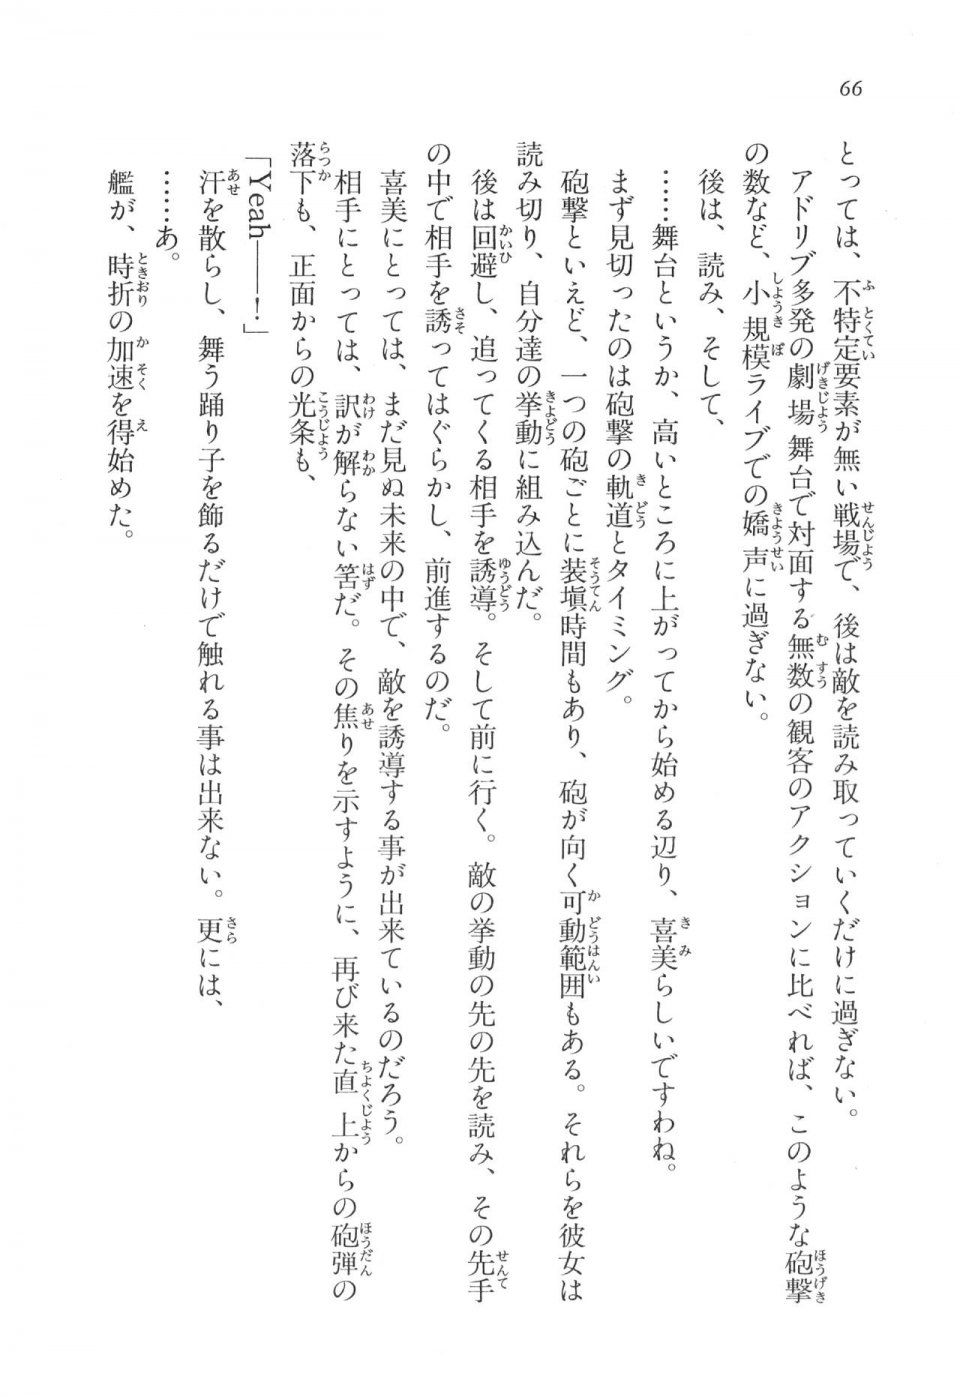 Kyoukai Senjou no Horizon LN Vol 17(7B) - Photo #66